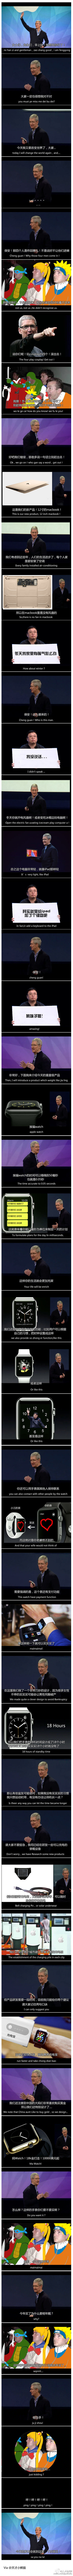 Apple Watch：品牌借势+网友吐槽大全1